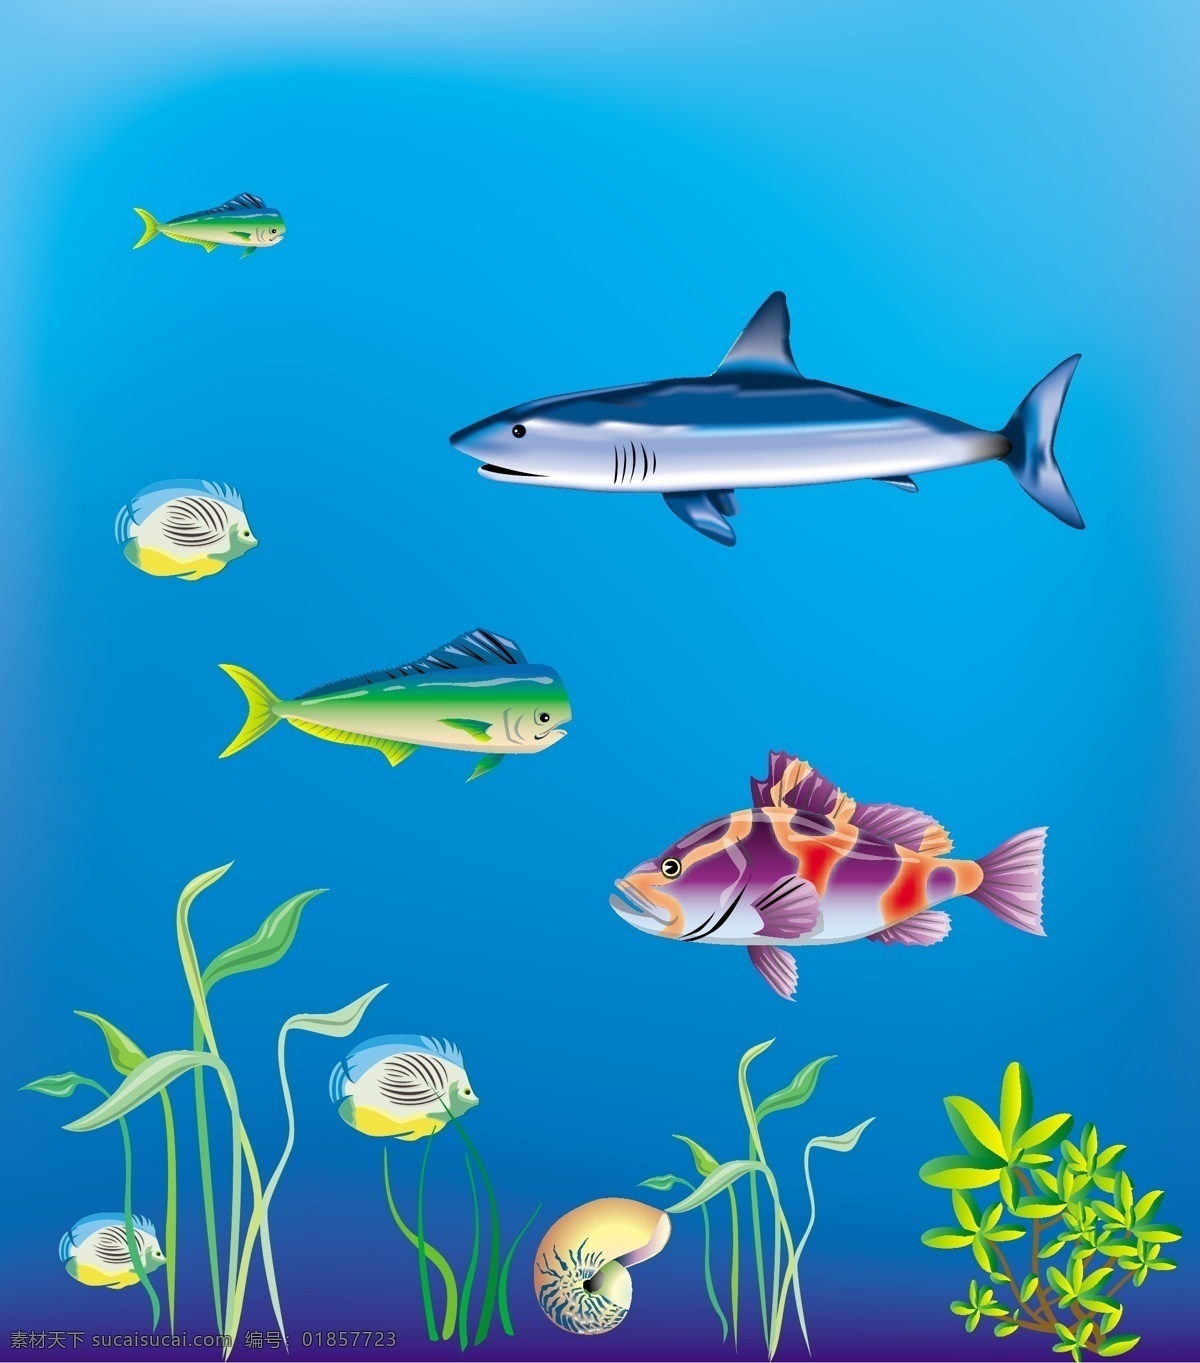 海洋世界 海洋 时间 鱼 贝壳 水草 矢量 鲨鱼 炫彩 可爱 好看 简单 鱼类 生物世界